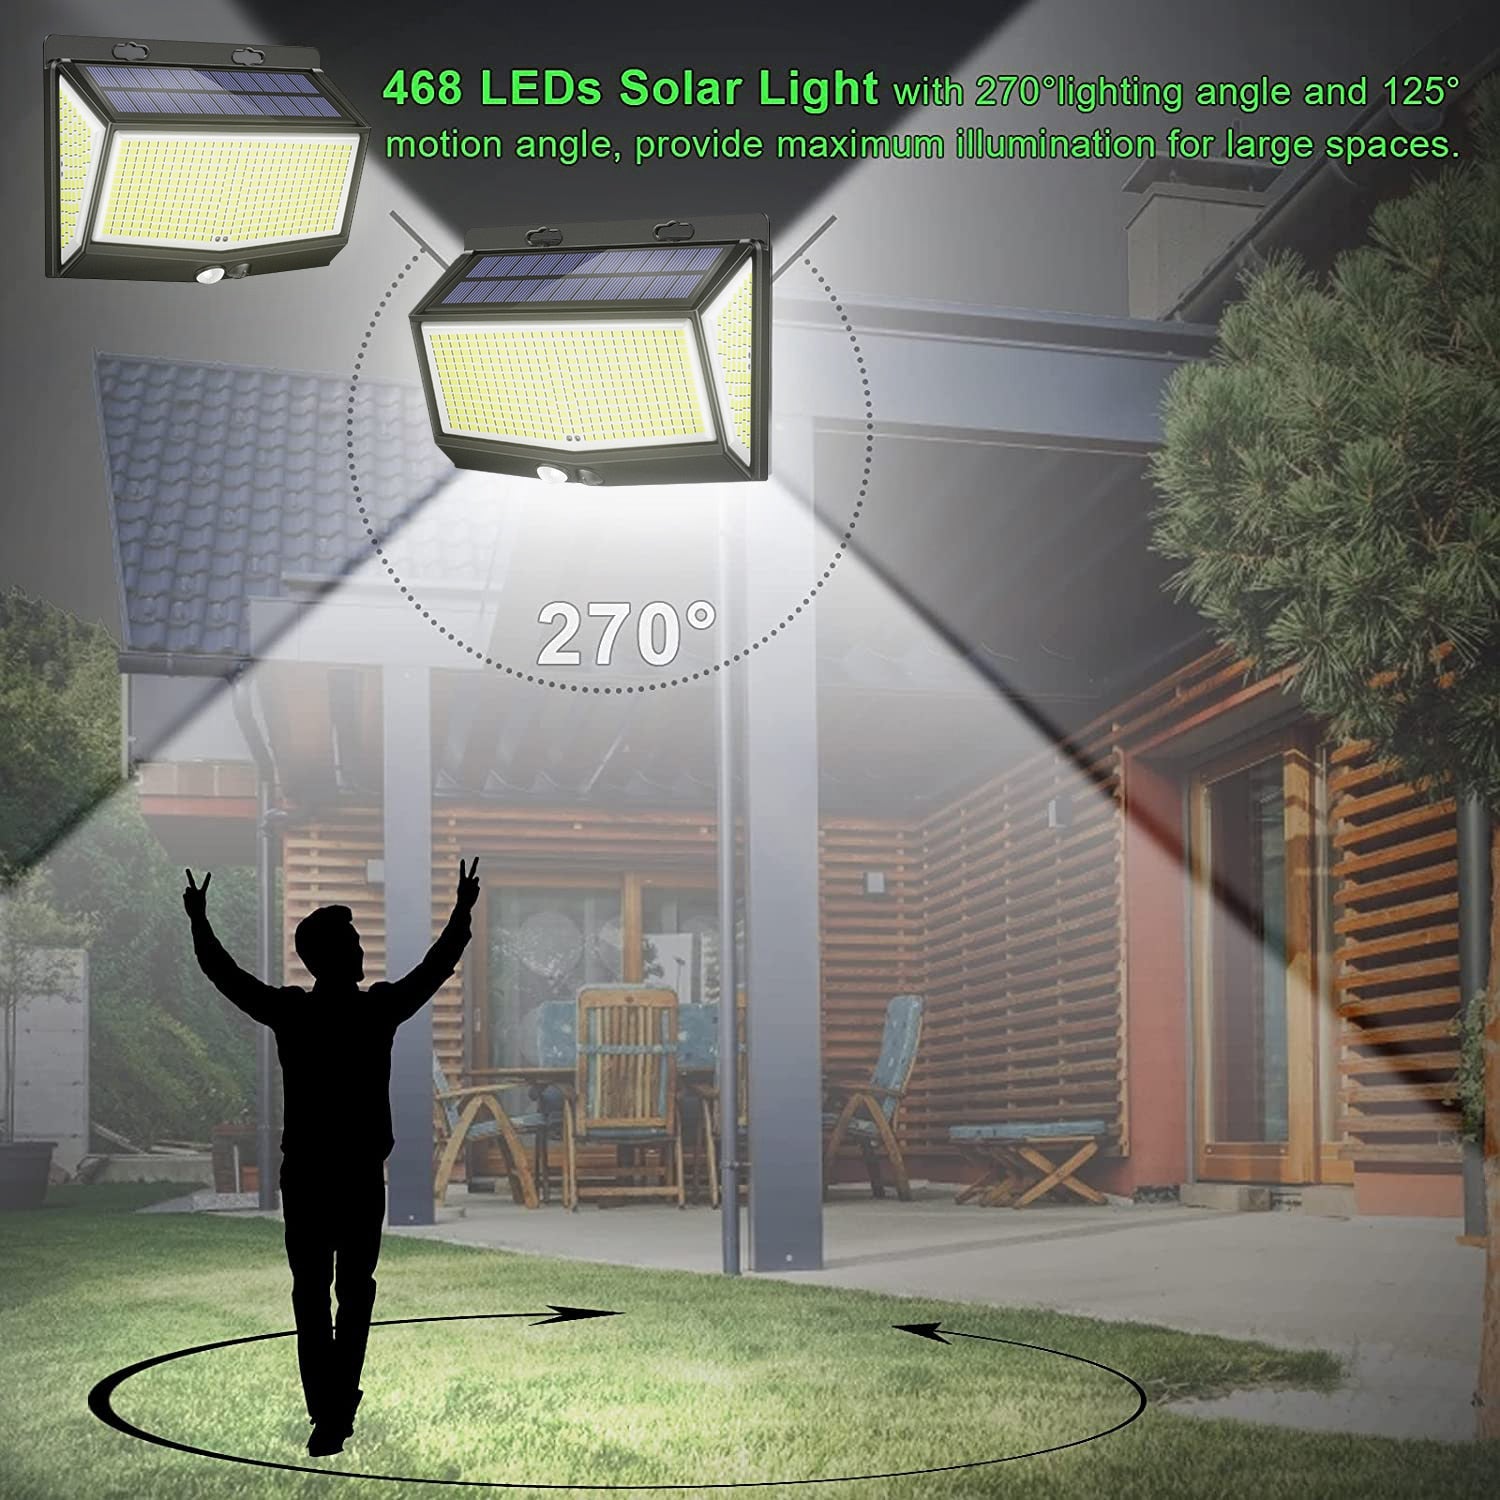 468 LEDs Solar Light with 2709lighting angle and 